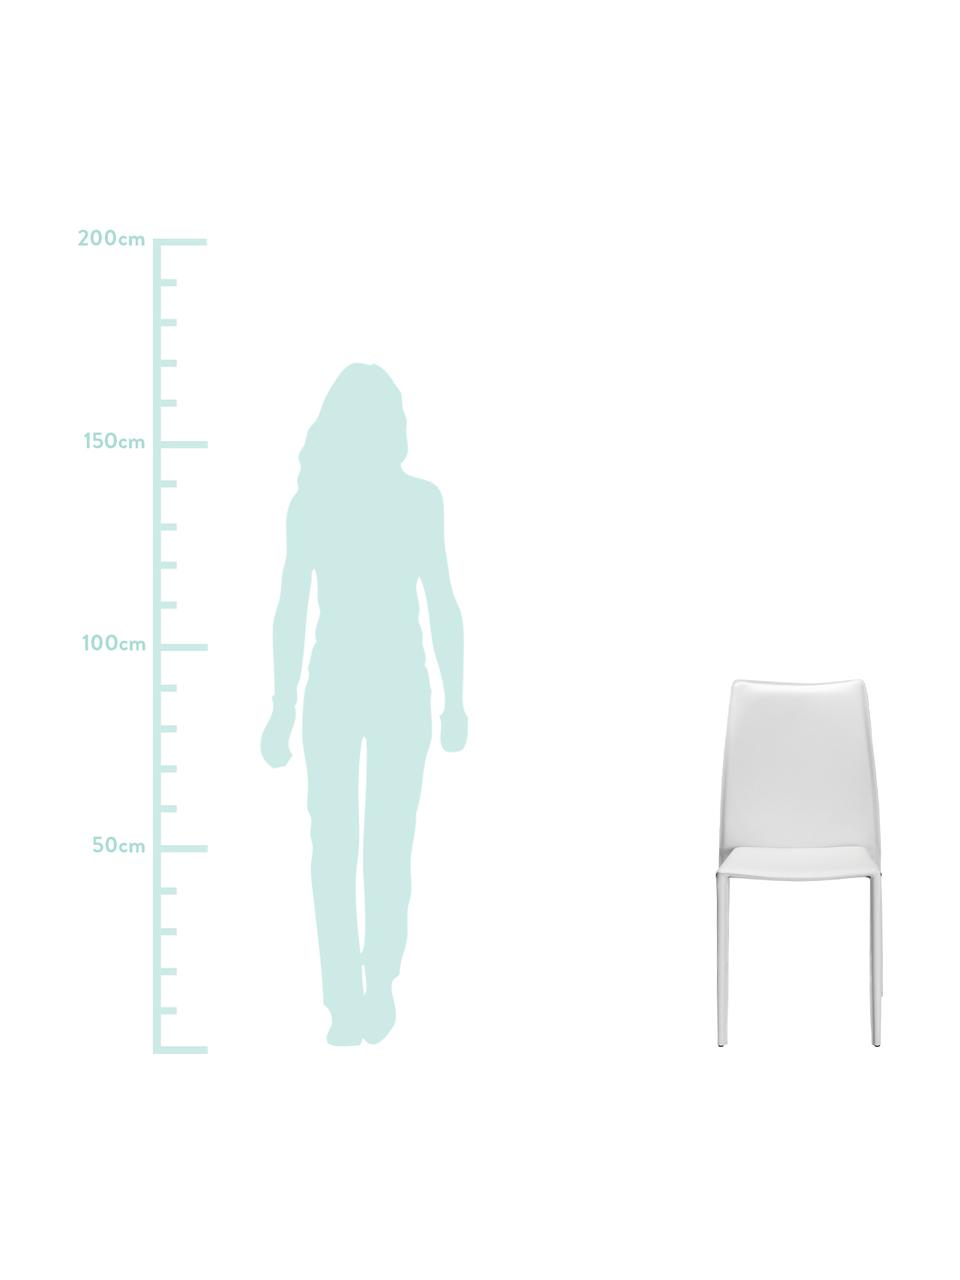 Leren stoelen Soléne, 2 stuks, Zitvlak: gerecycled leer, Frame: metaal bekleed met gerecy, Wit, B 48 x D 60 cm